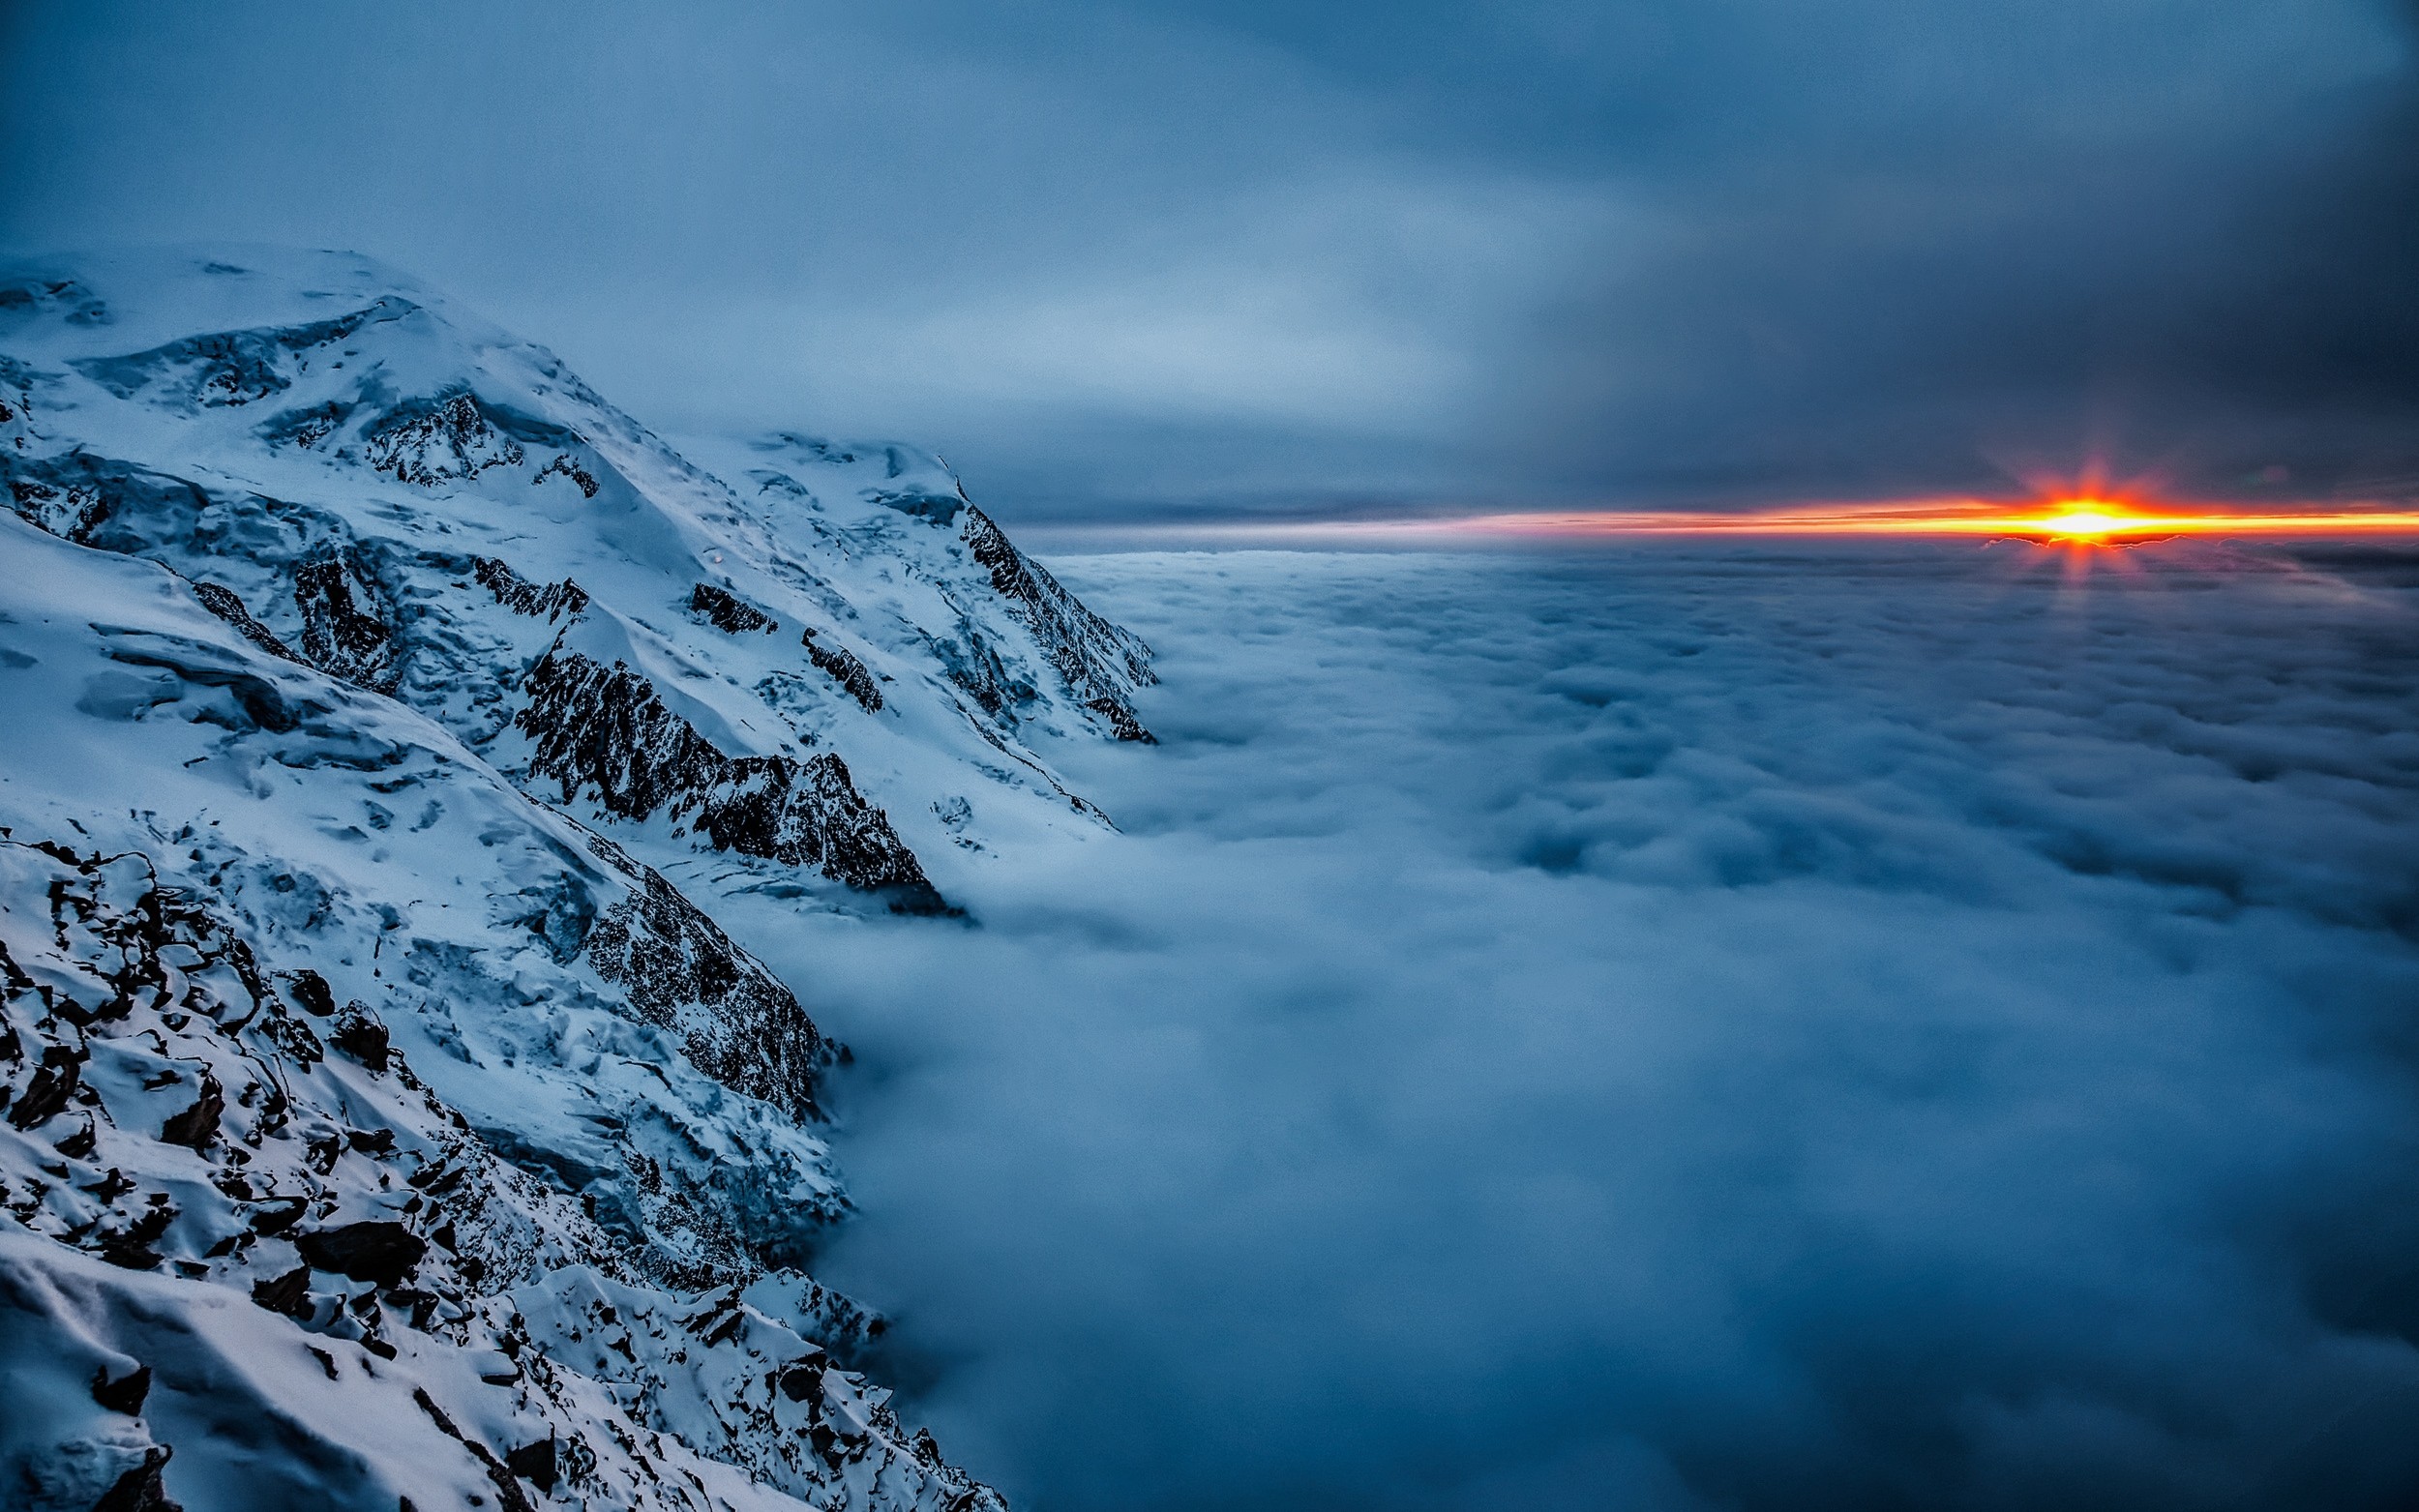 General 2500x1563 nature landscape sunset clouds mountains mist snow blue